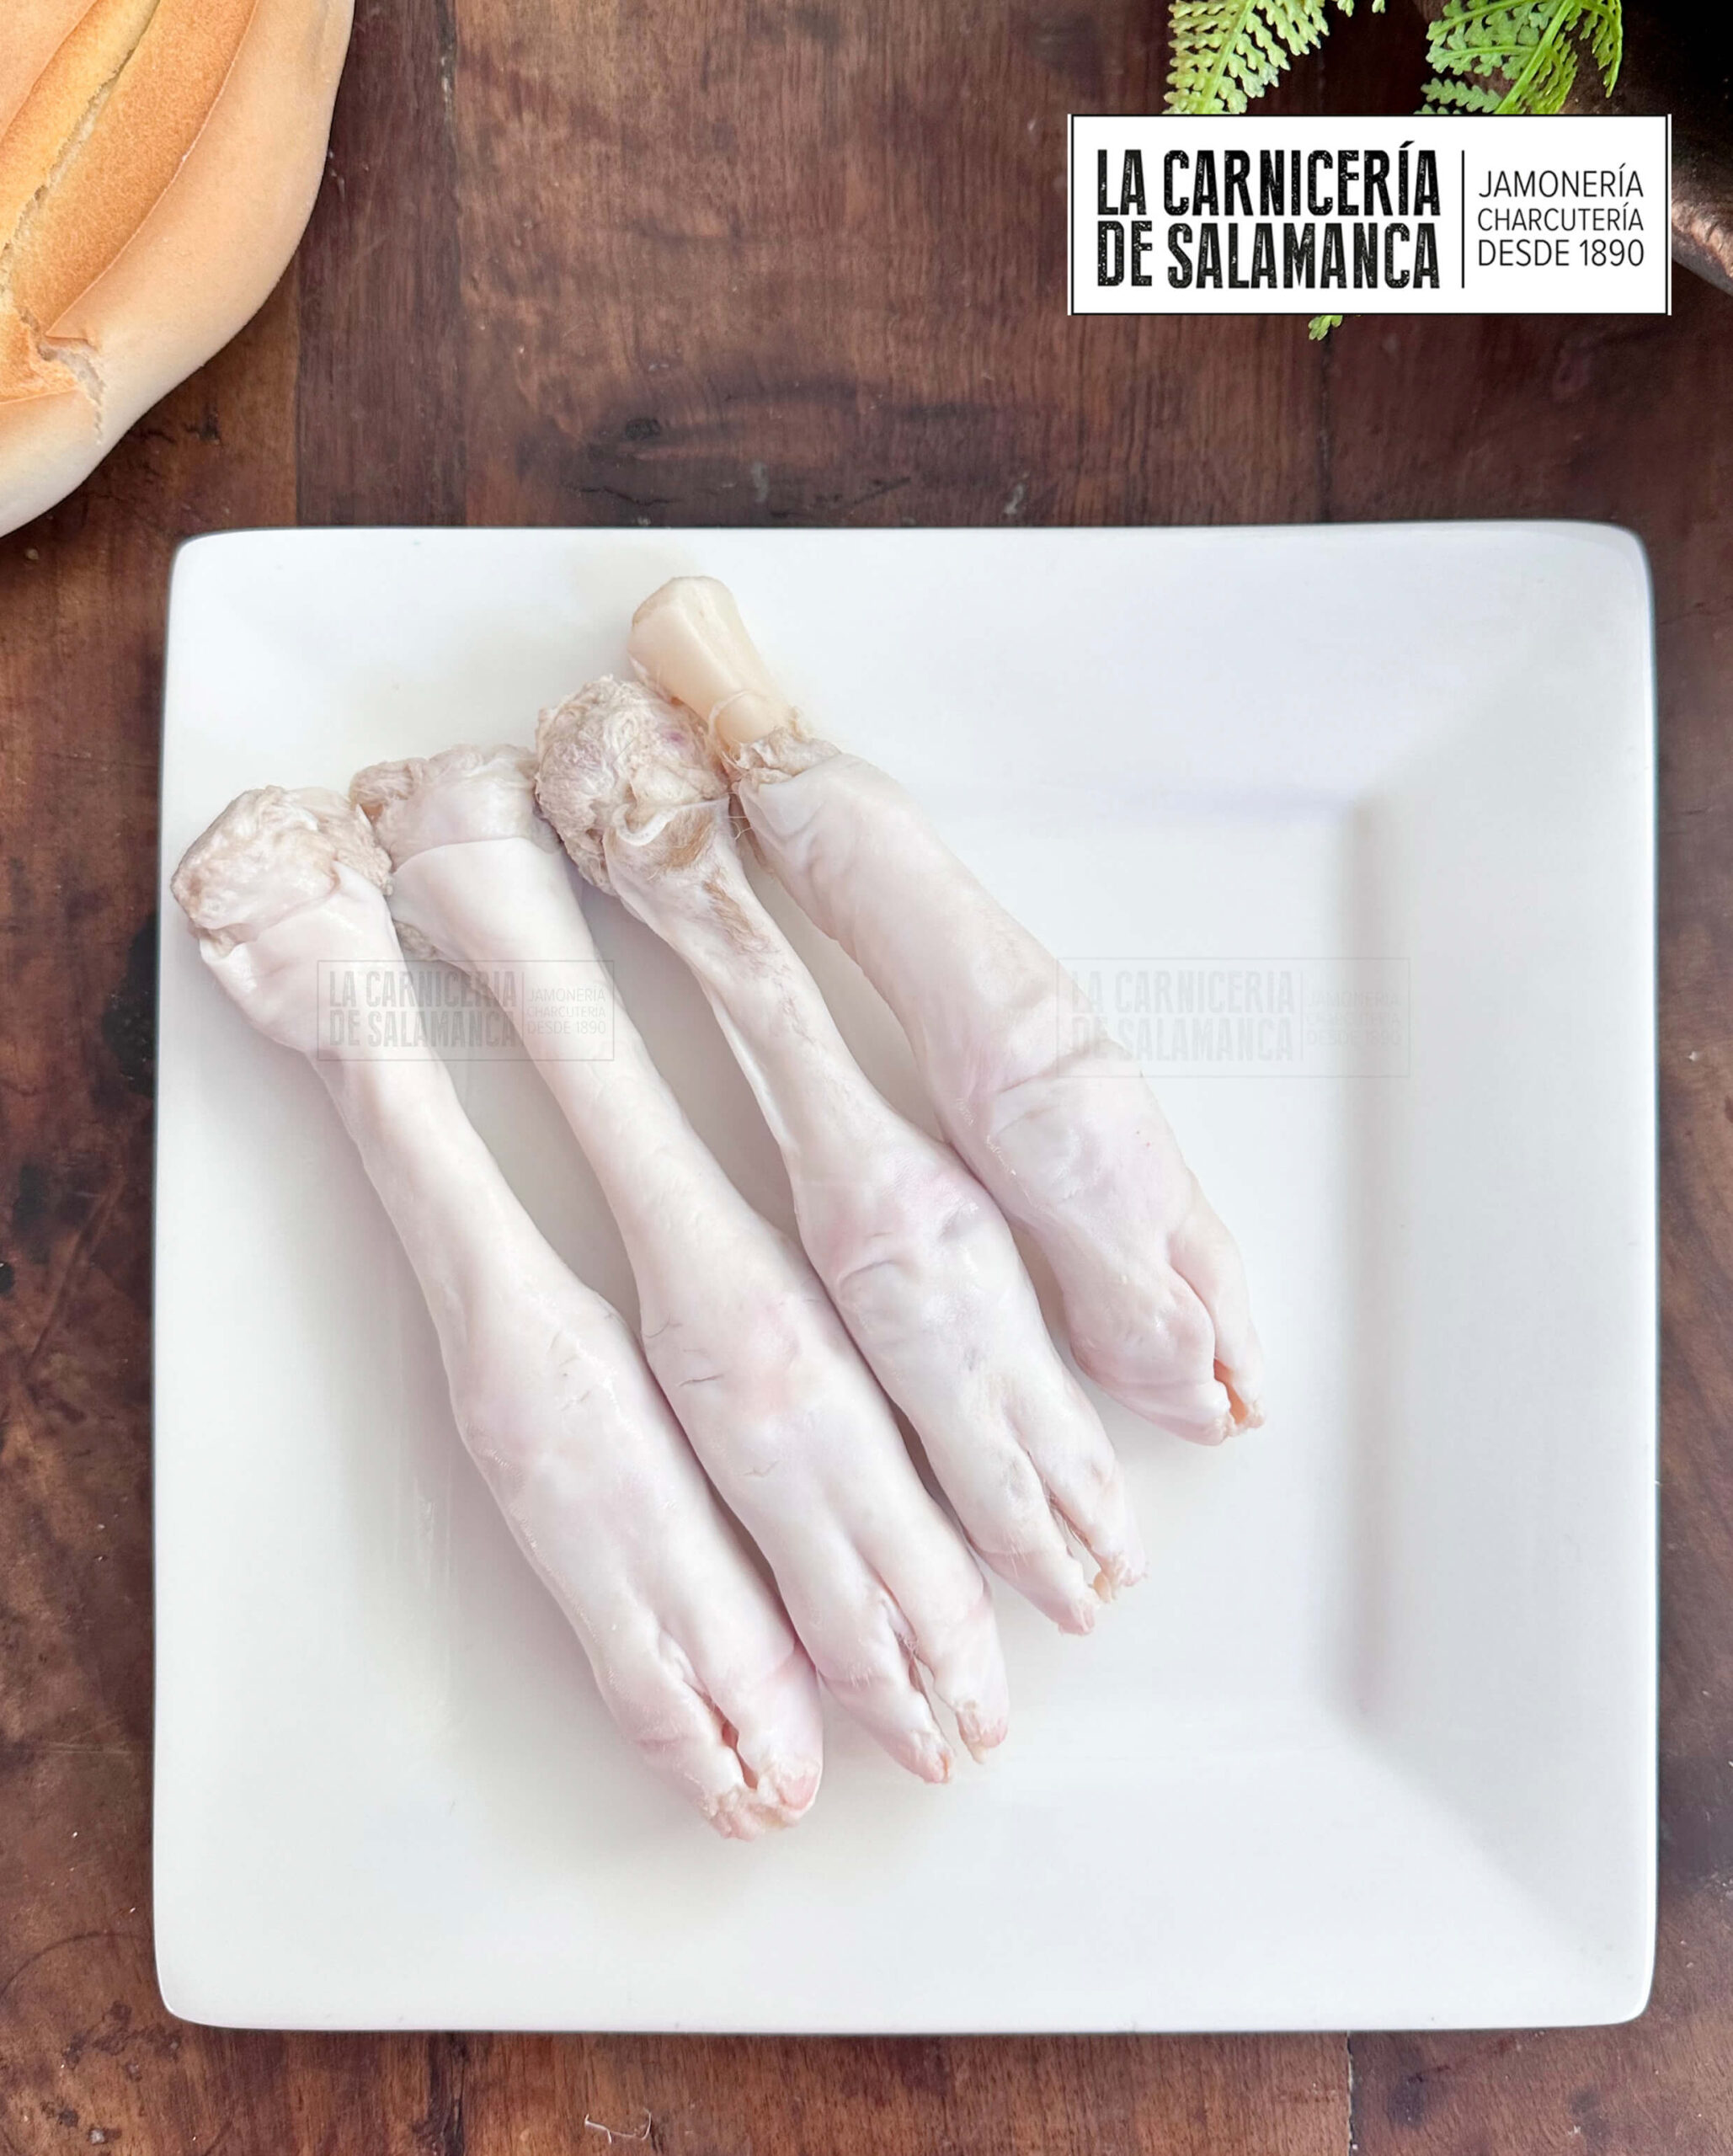 Manitas de cordero lechal o patas de cordero lechal disponibles para comprar en nuestra carnicería online: La Carnicería de Salamanca.